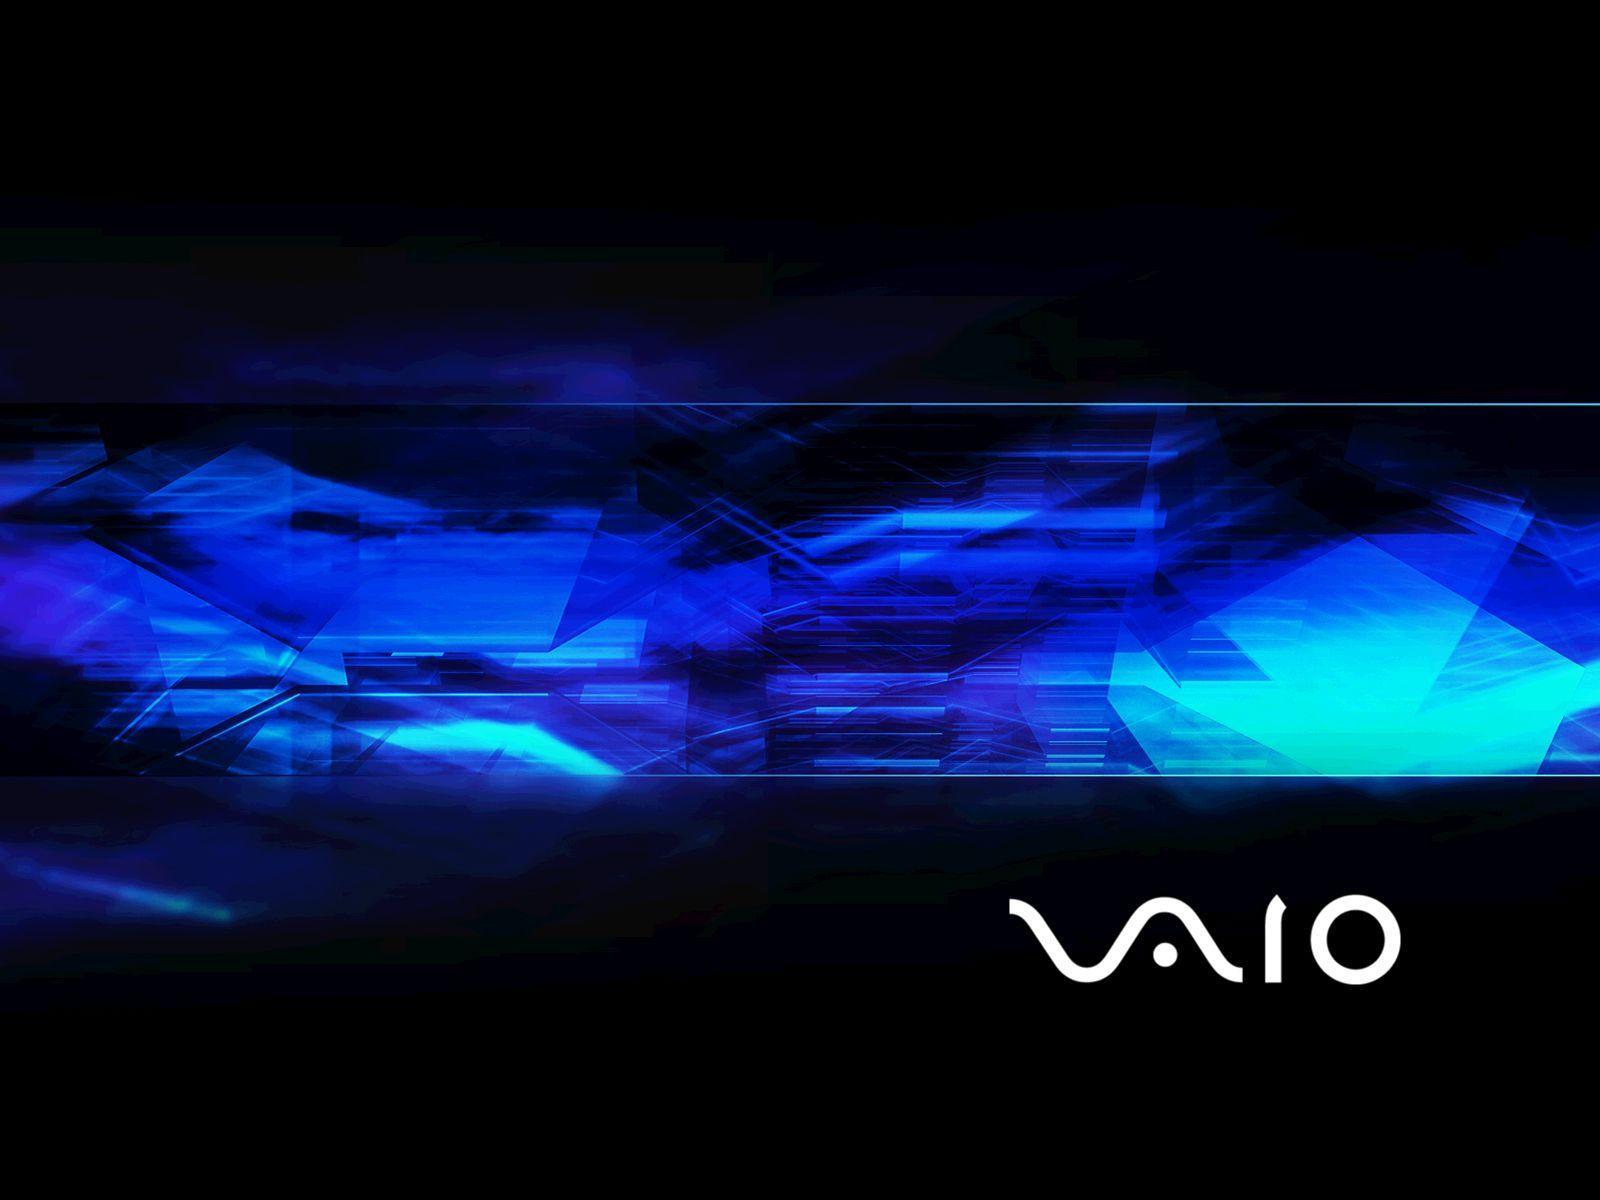 Sony Vaio Desktop Wallpaper Download